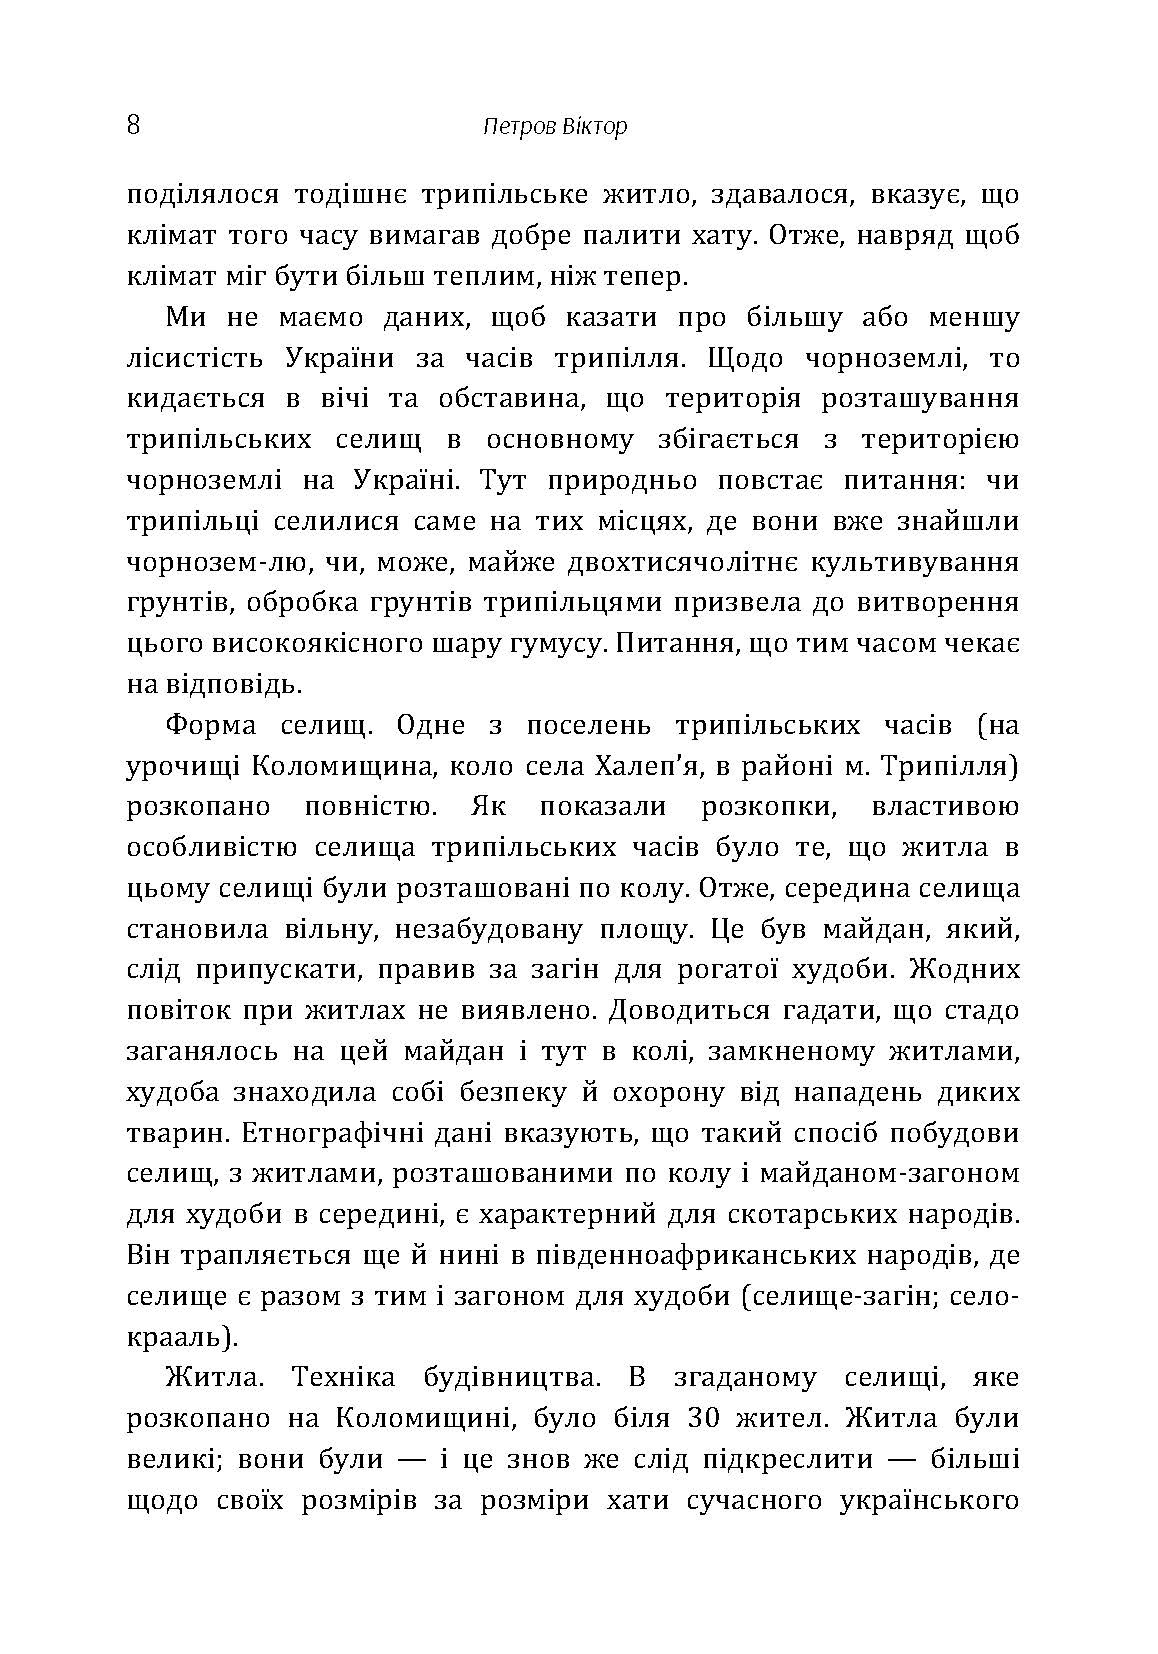 Походження українського народу.. Автор — Петров Віктор Платонович. 